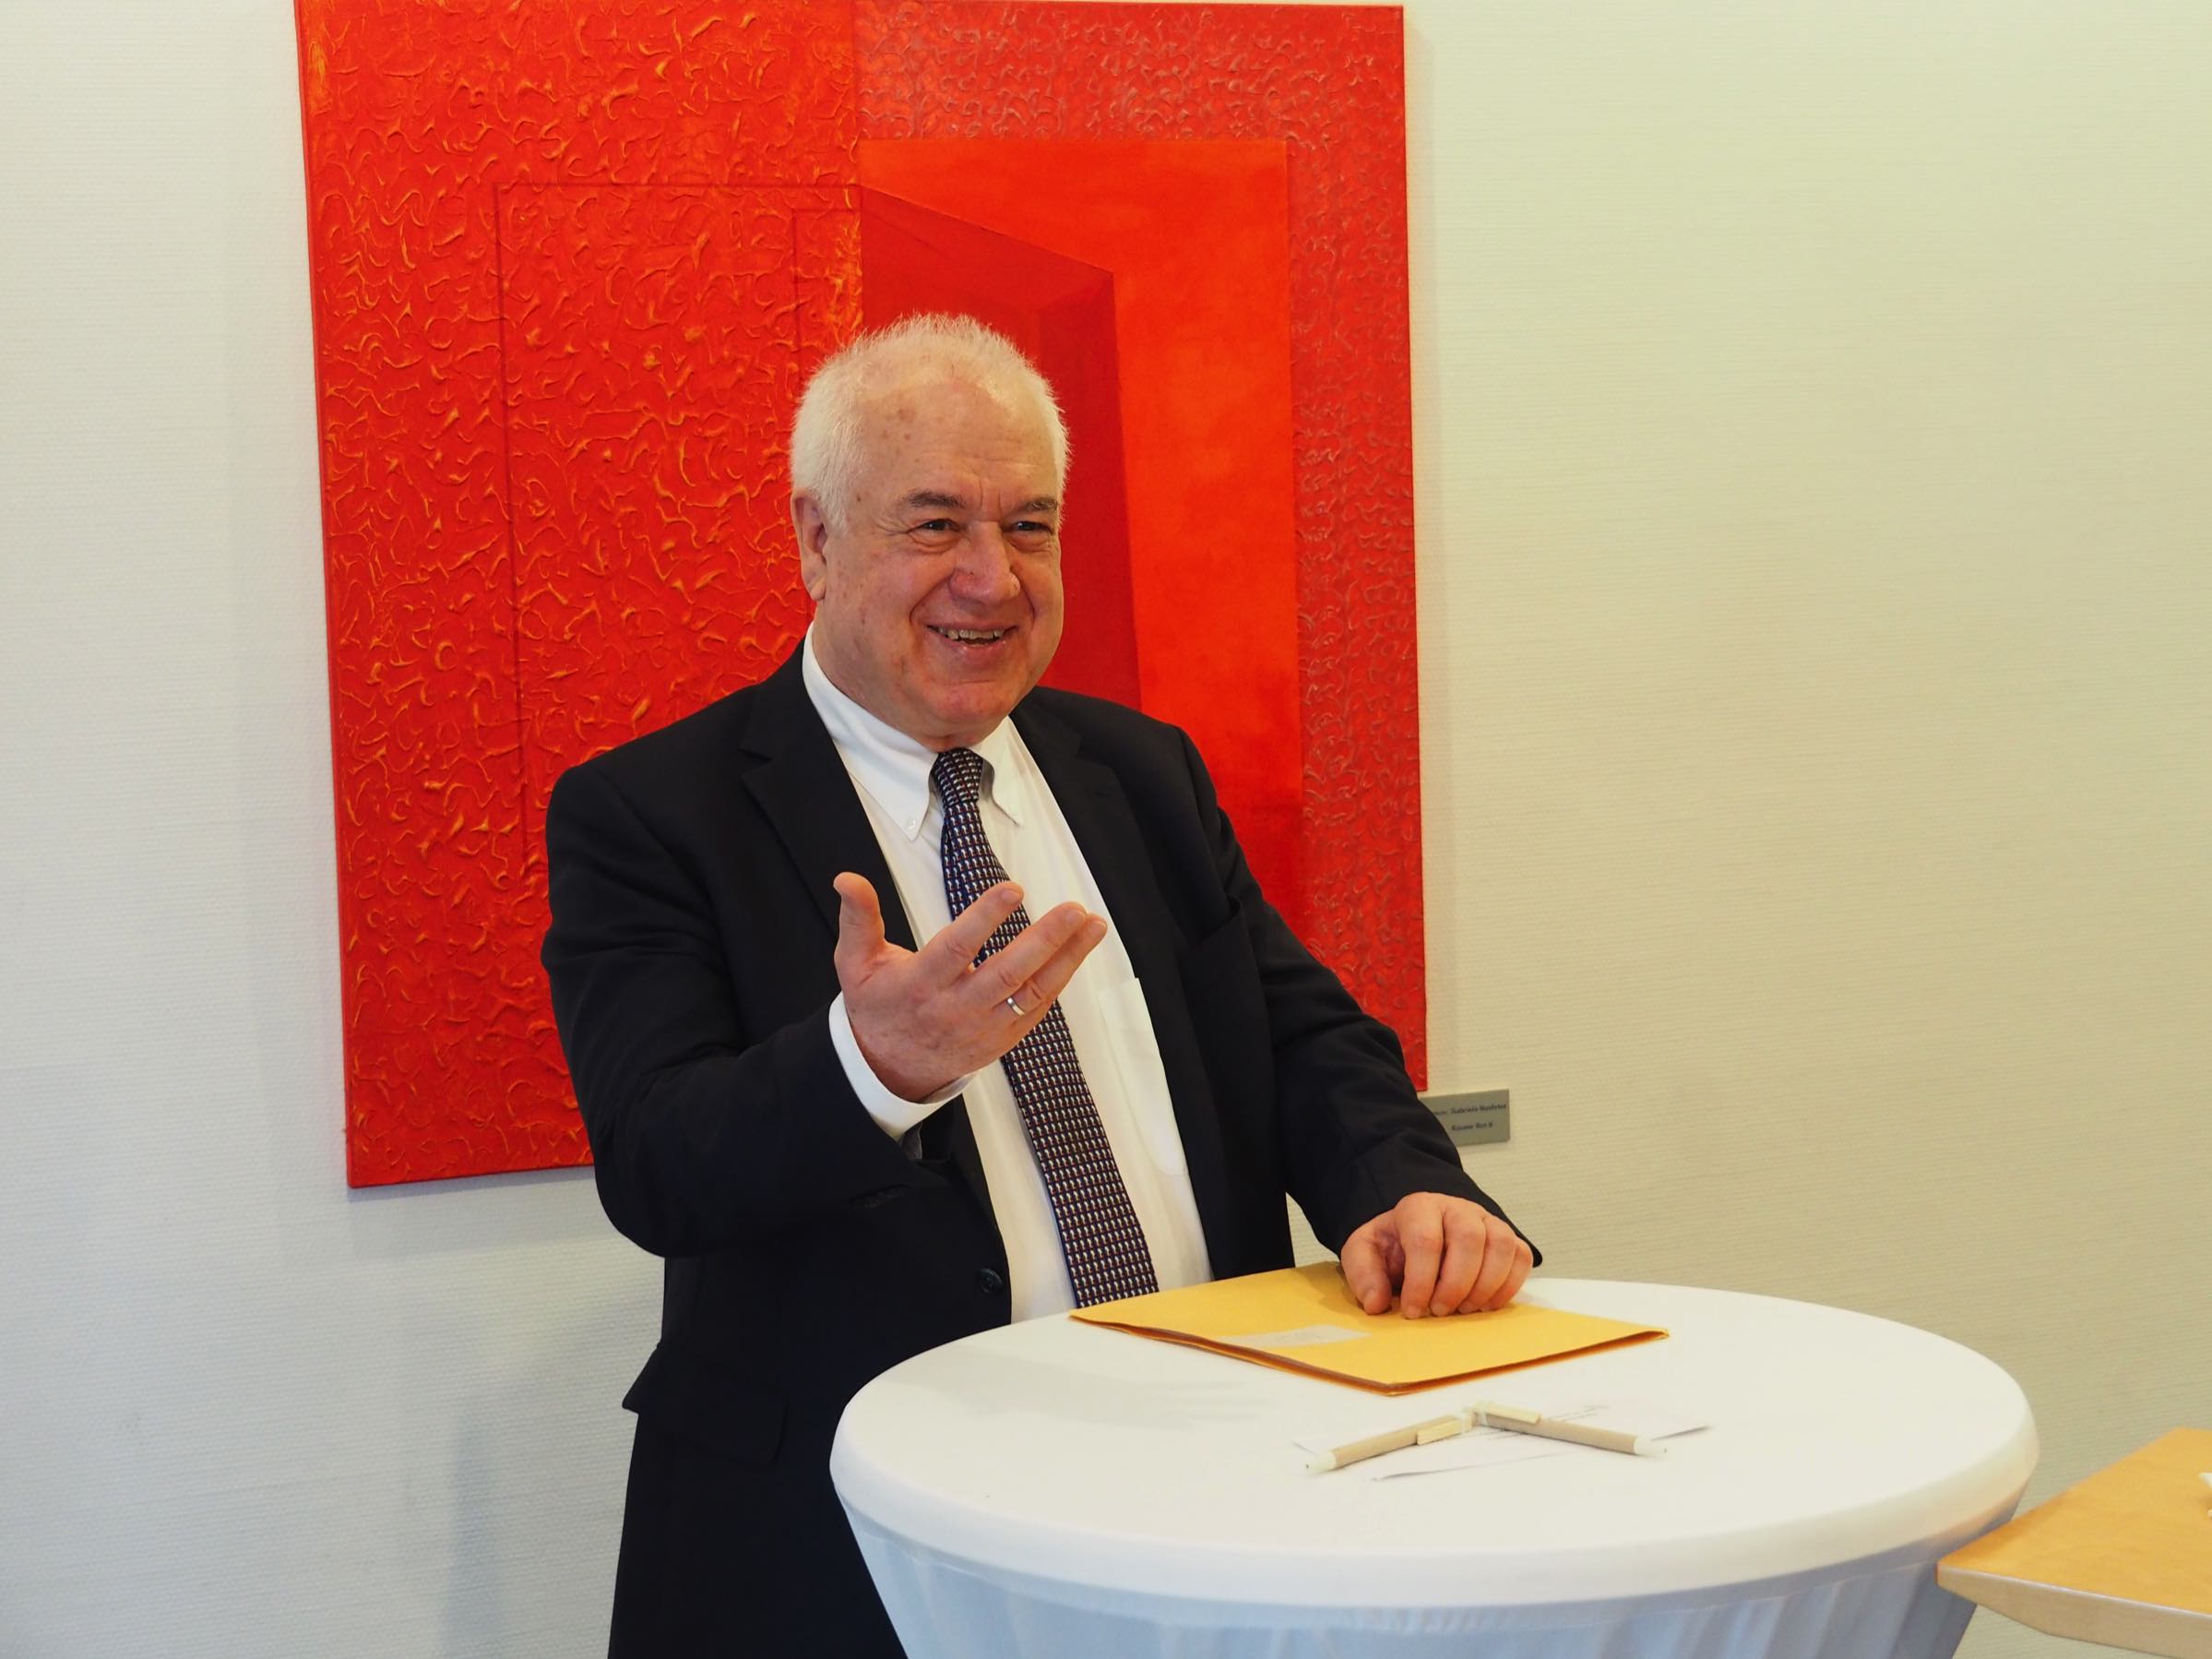 Prof. Bassam Tibi bei Bürgerimpulse in Ulm